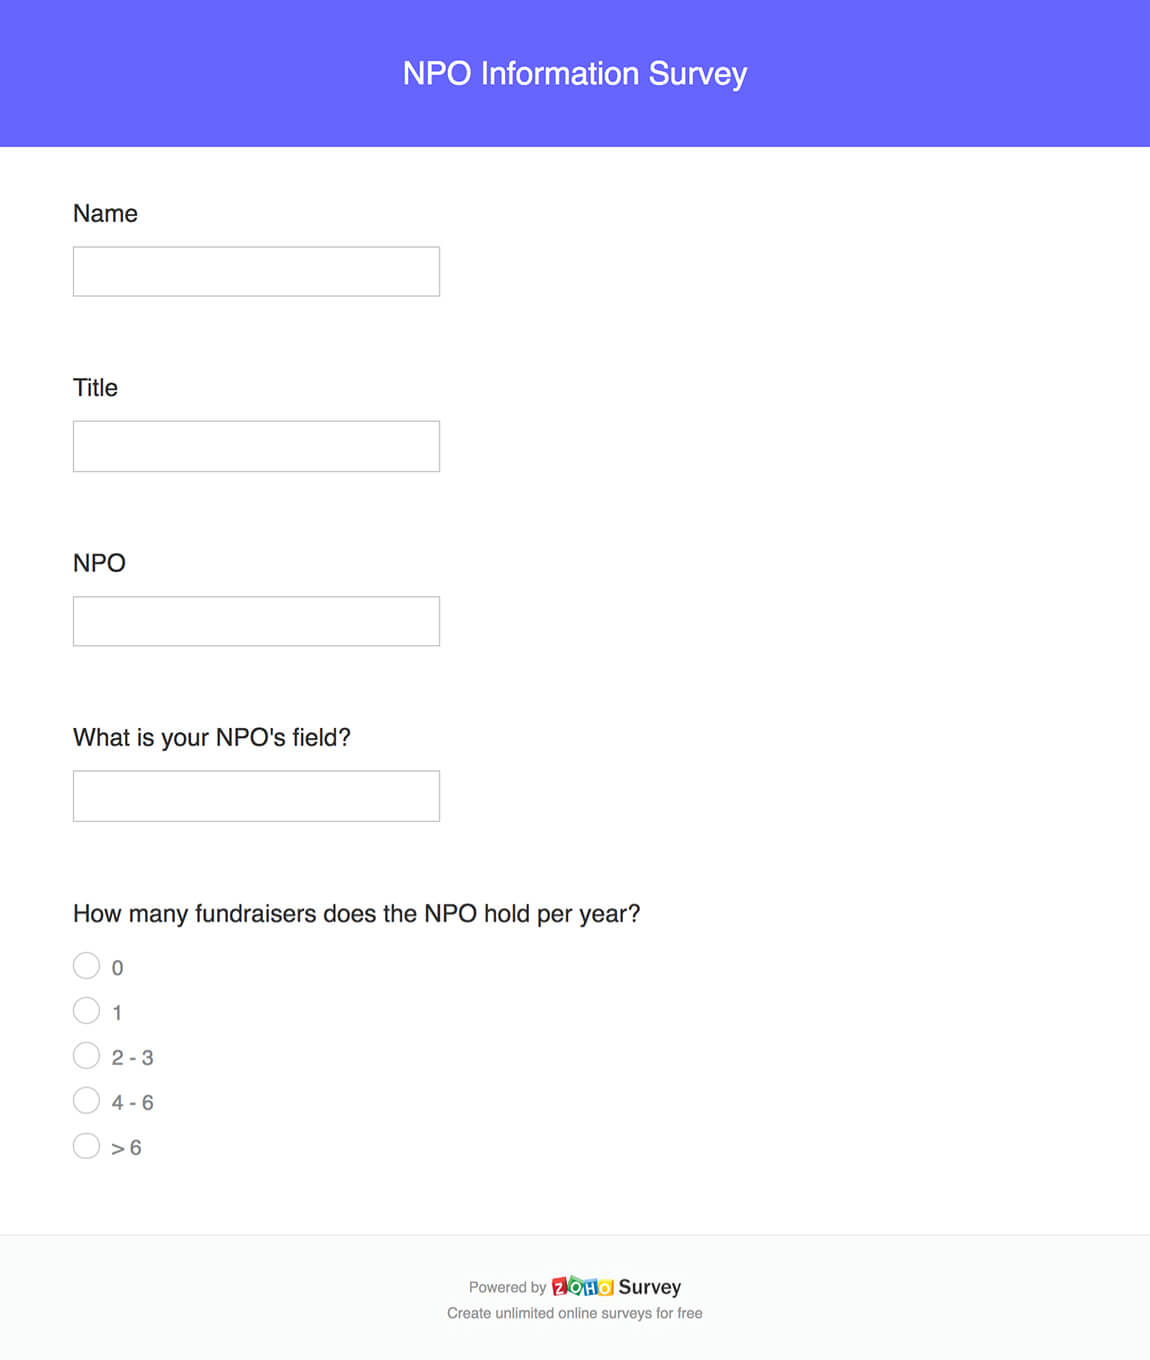 NPO information survey questionnaire template